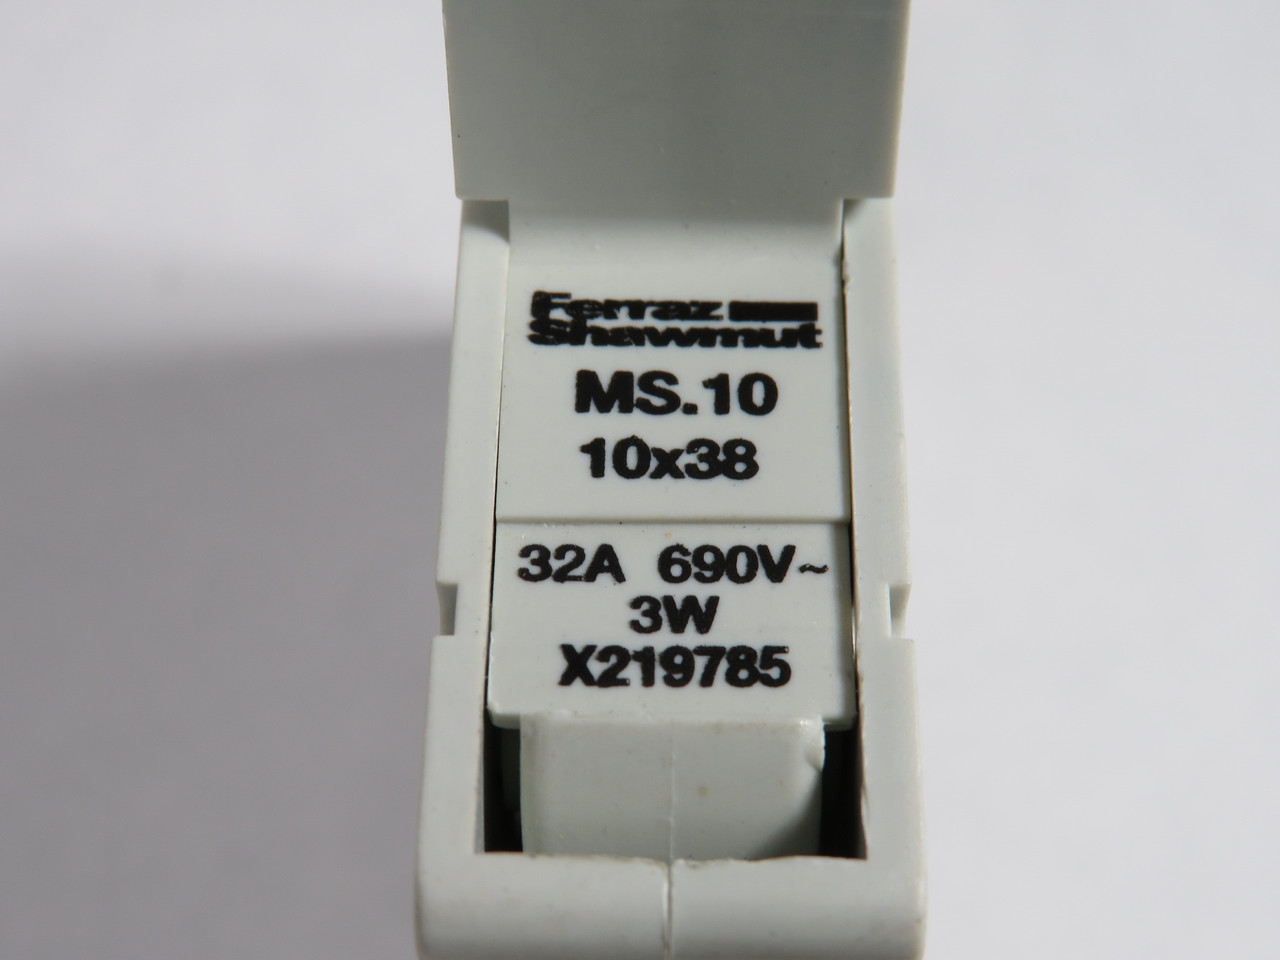 Ferraz Shawmut MS.10 Modular Fuse Holder 32A 690V 1-Pole X219785 USED